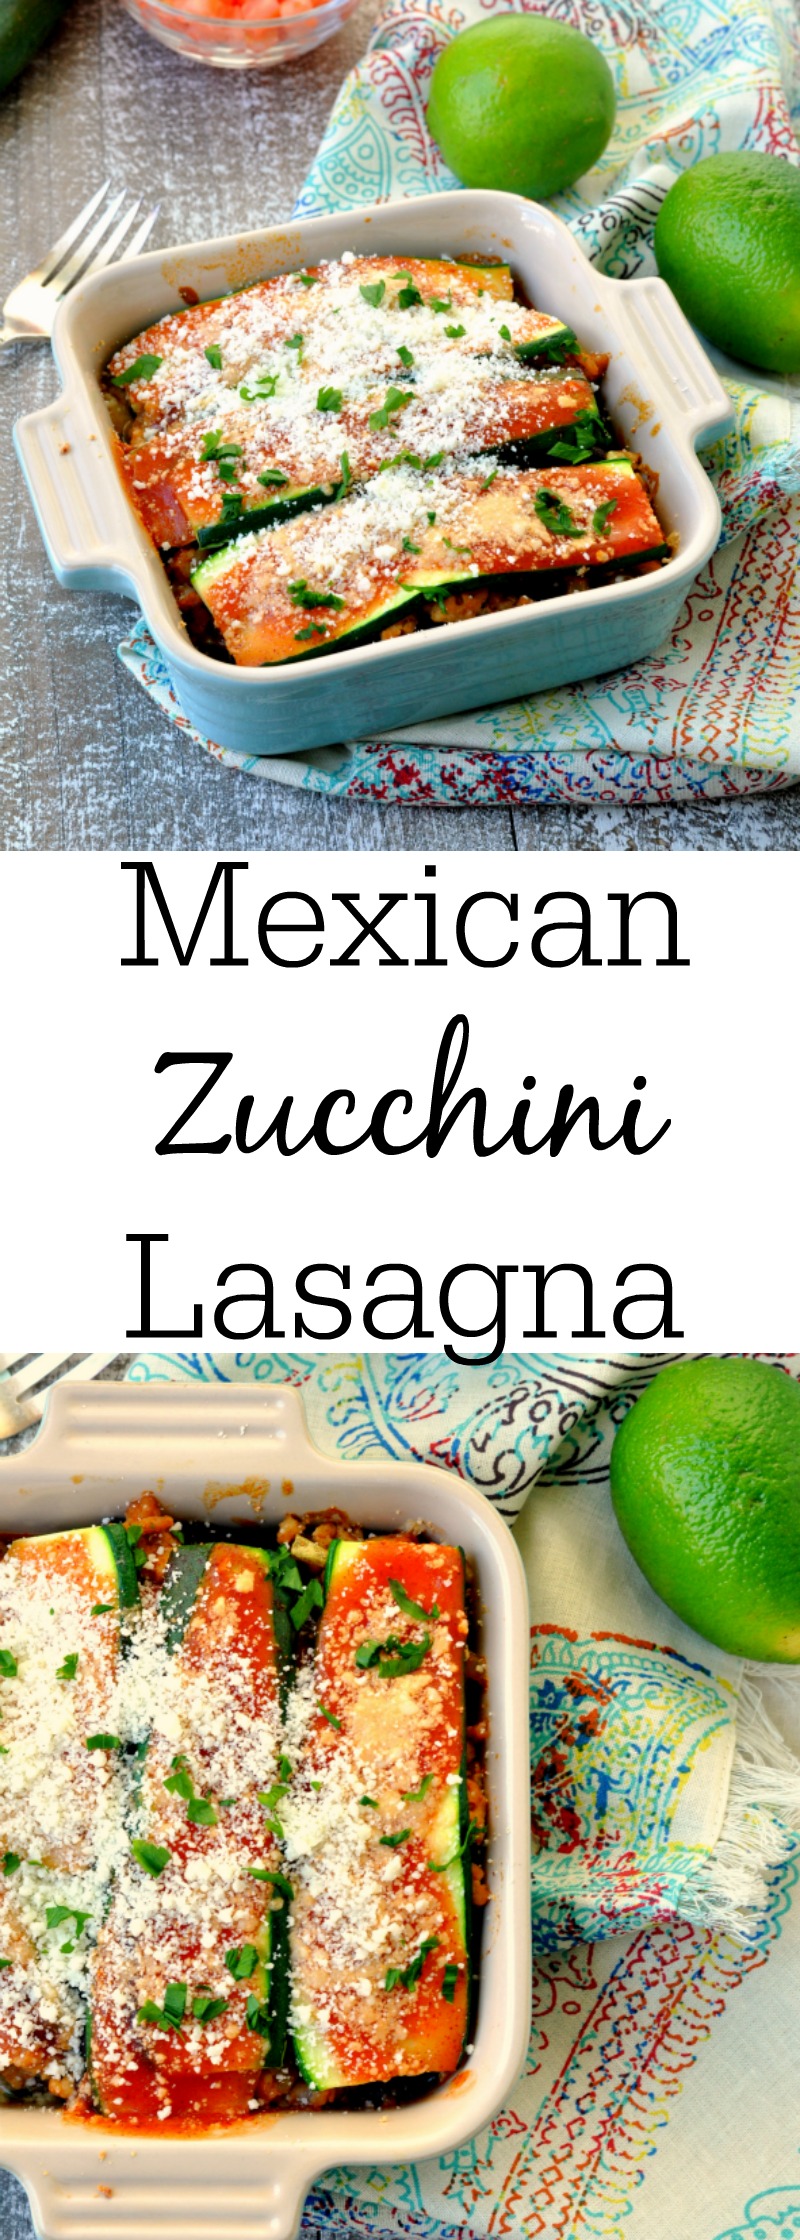 Mexican Zucchini Lasagna